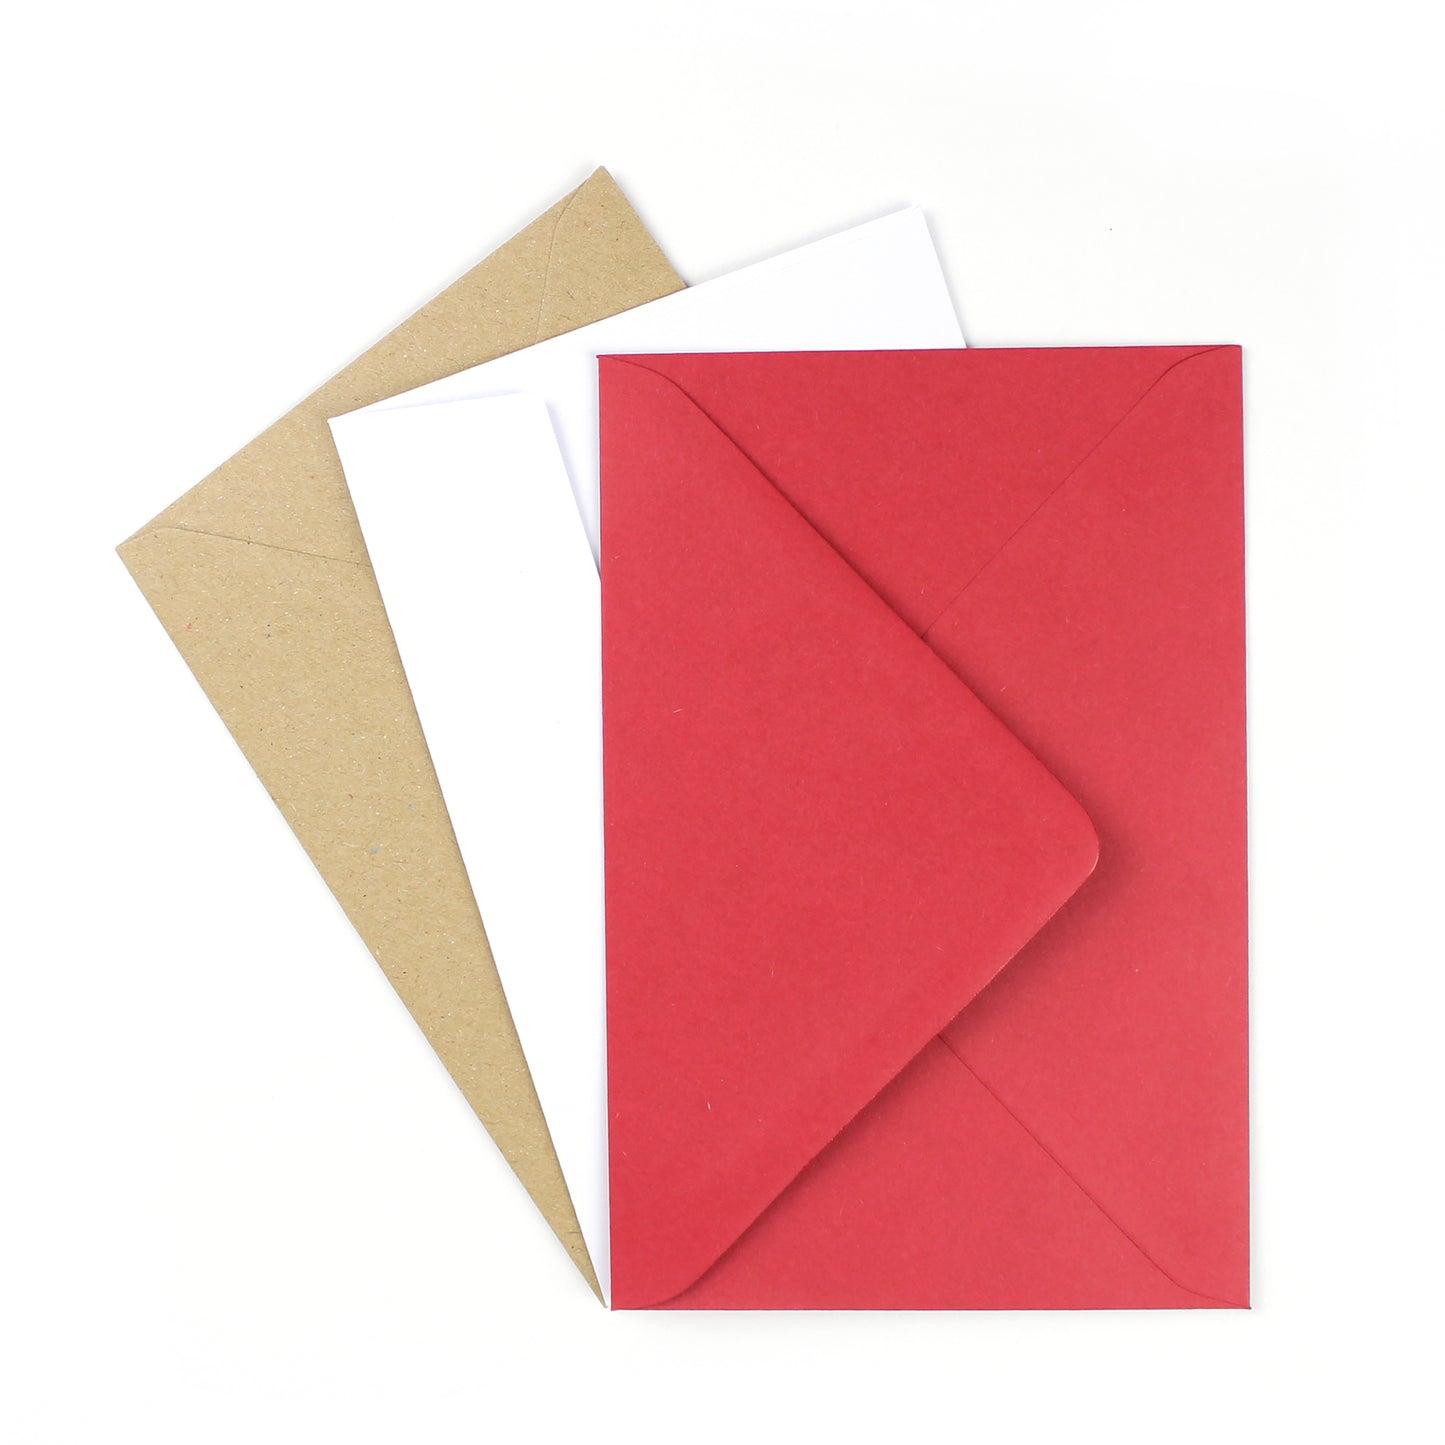 kraft, white and red envelopes